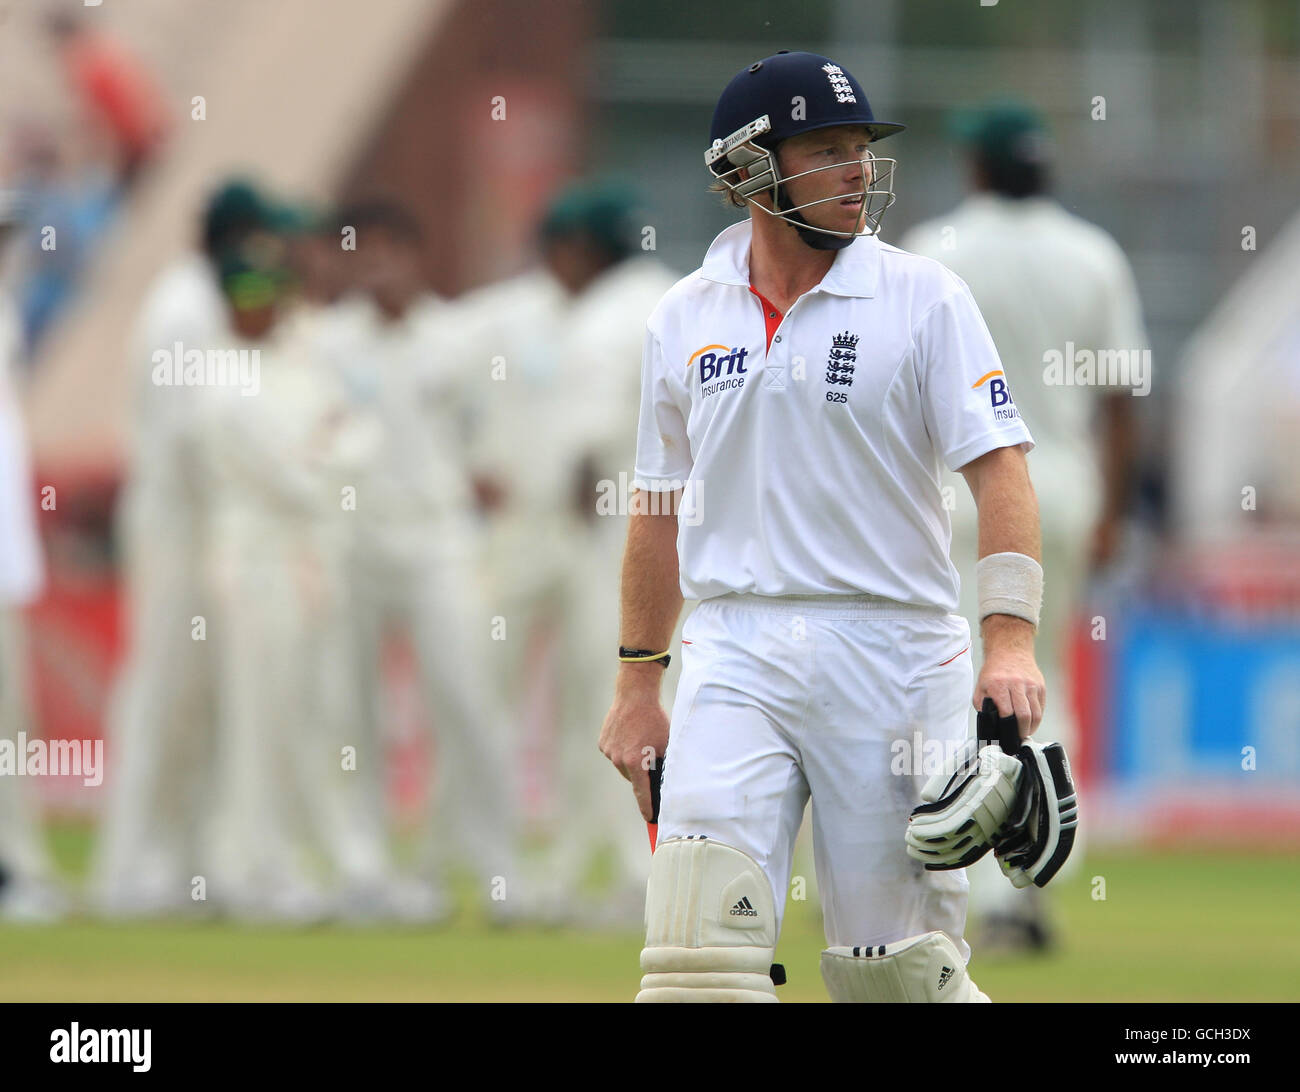 Cricket - npower second Test - deuxième jour - Angleterre / Bangladesh - Old Trafford.Ian Bell, en Angleterre, se délaie après avoir pris ses sorties pour 128 Banque D'Images